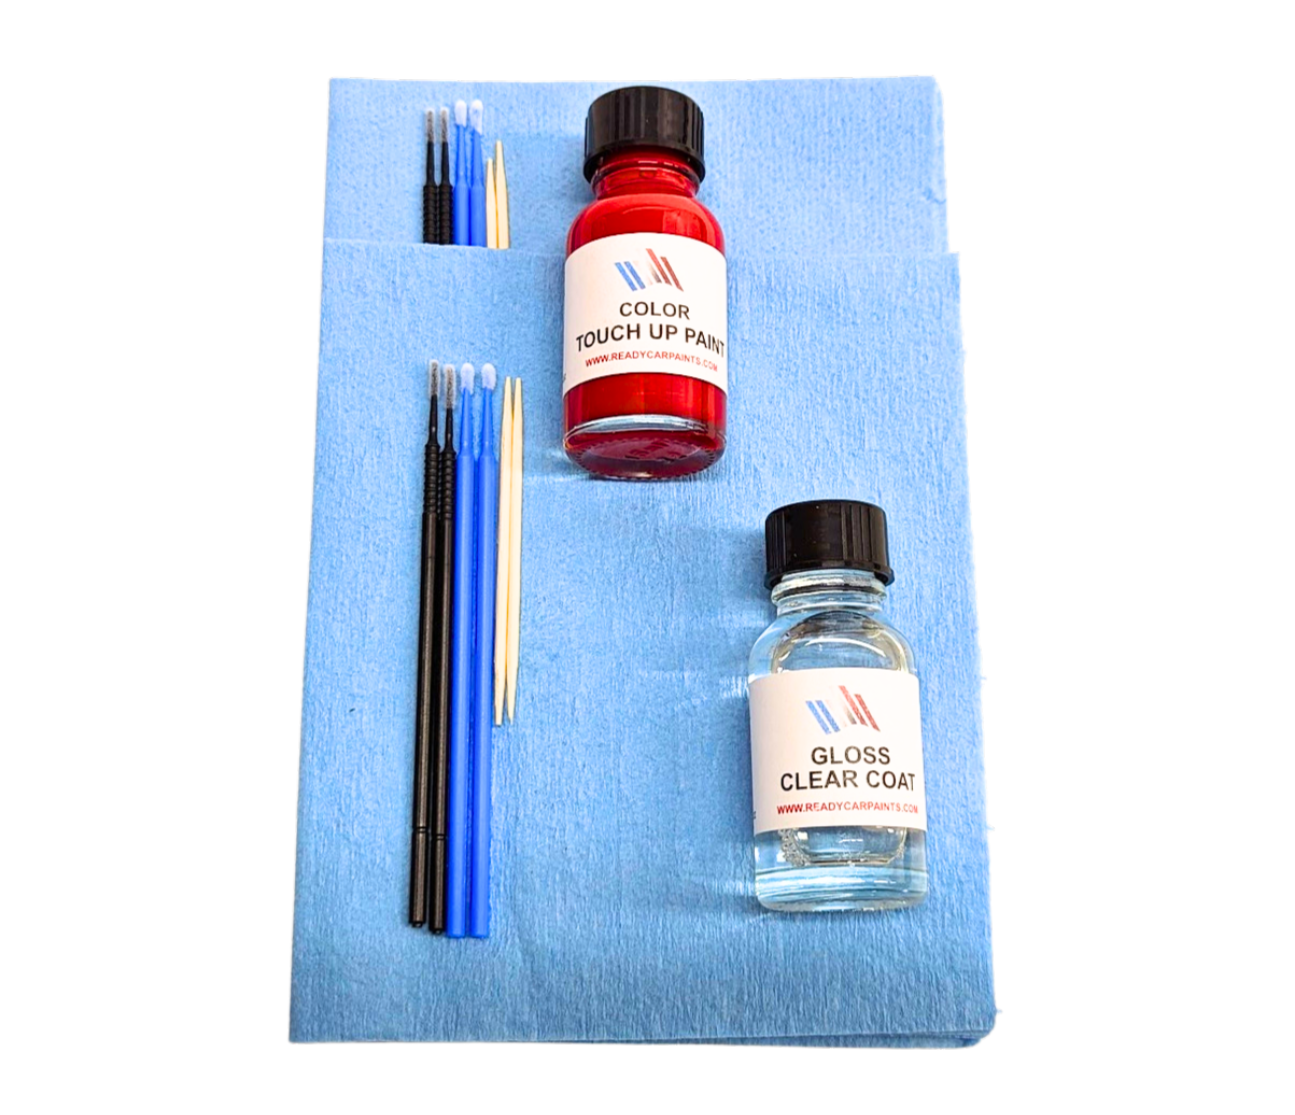 SUBARU 35J Regal Blue Pearl Touch Up Paint Kit 100% OEM Color Match